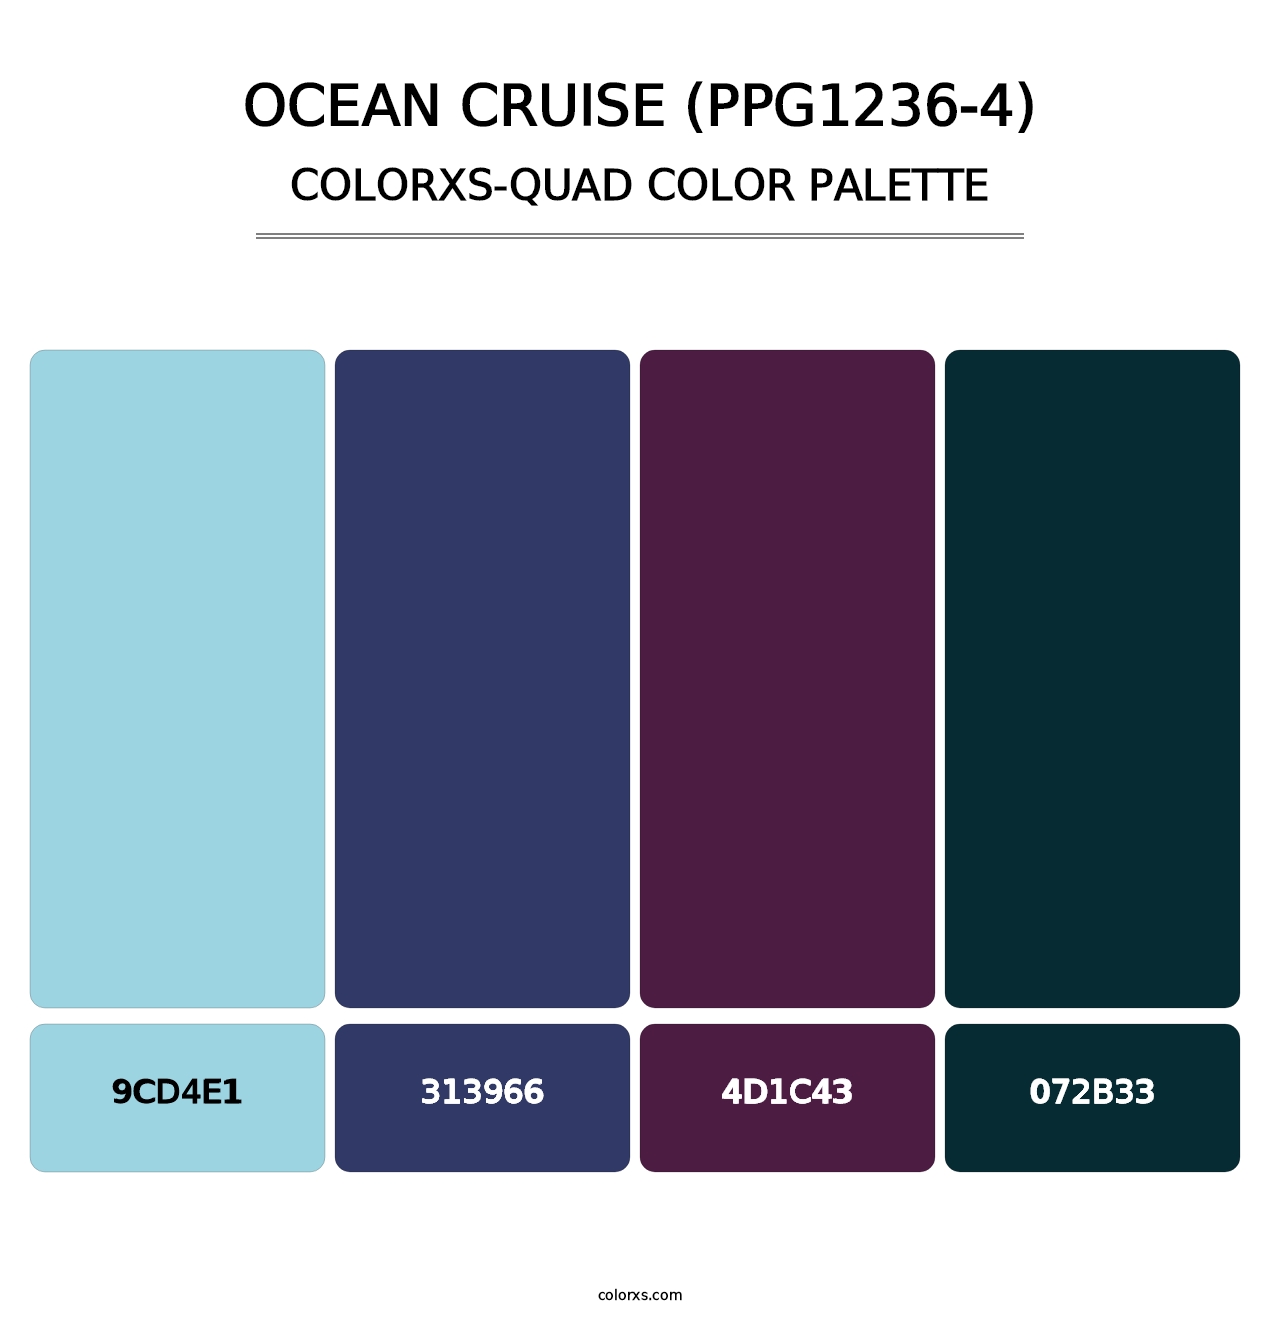 Ocean Cruise (PPG1236-4) - Colorxs Quad Palette